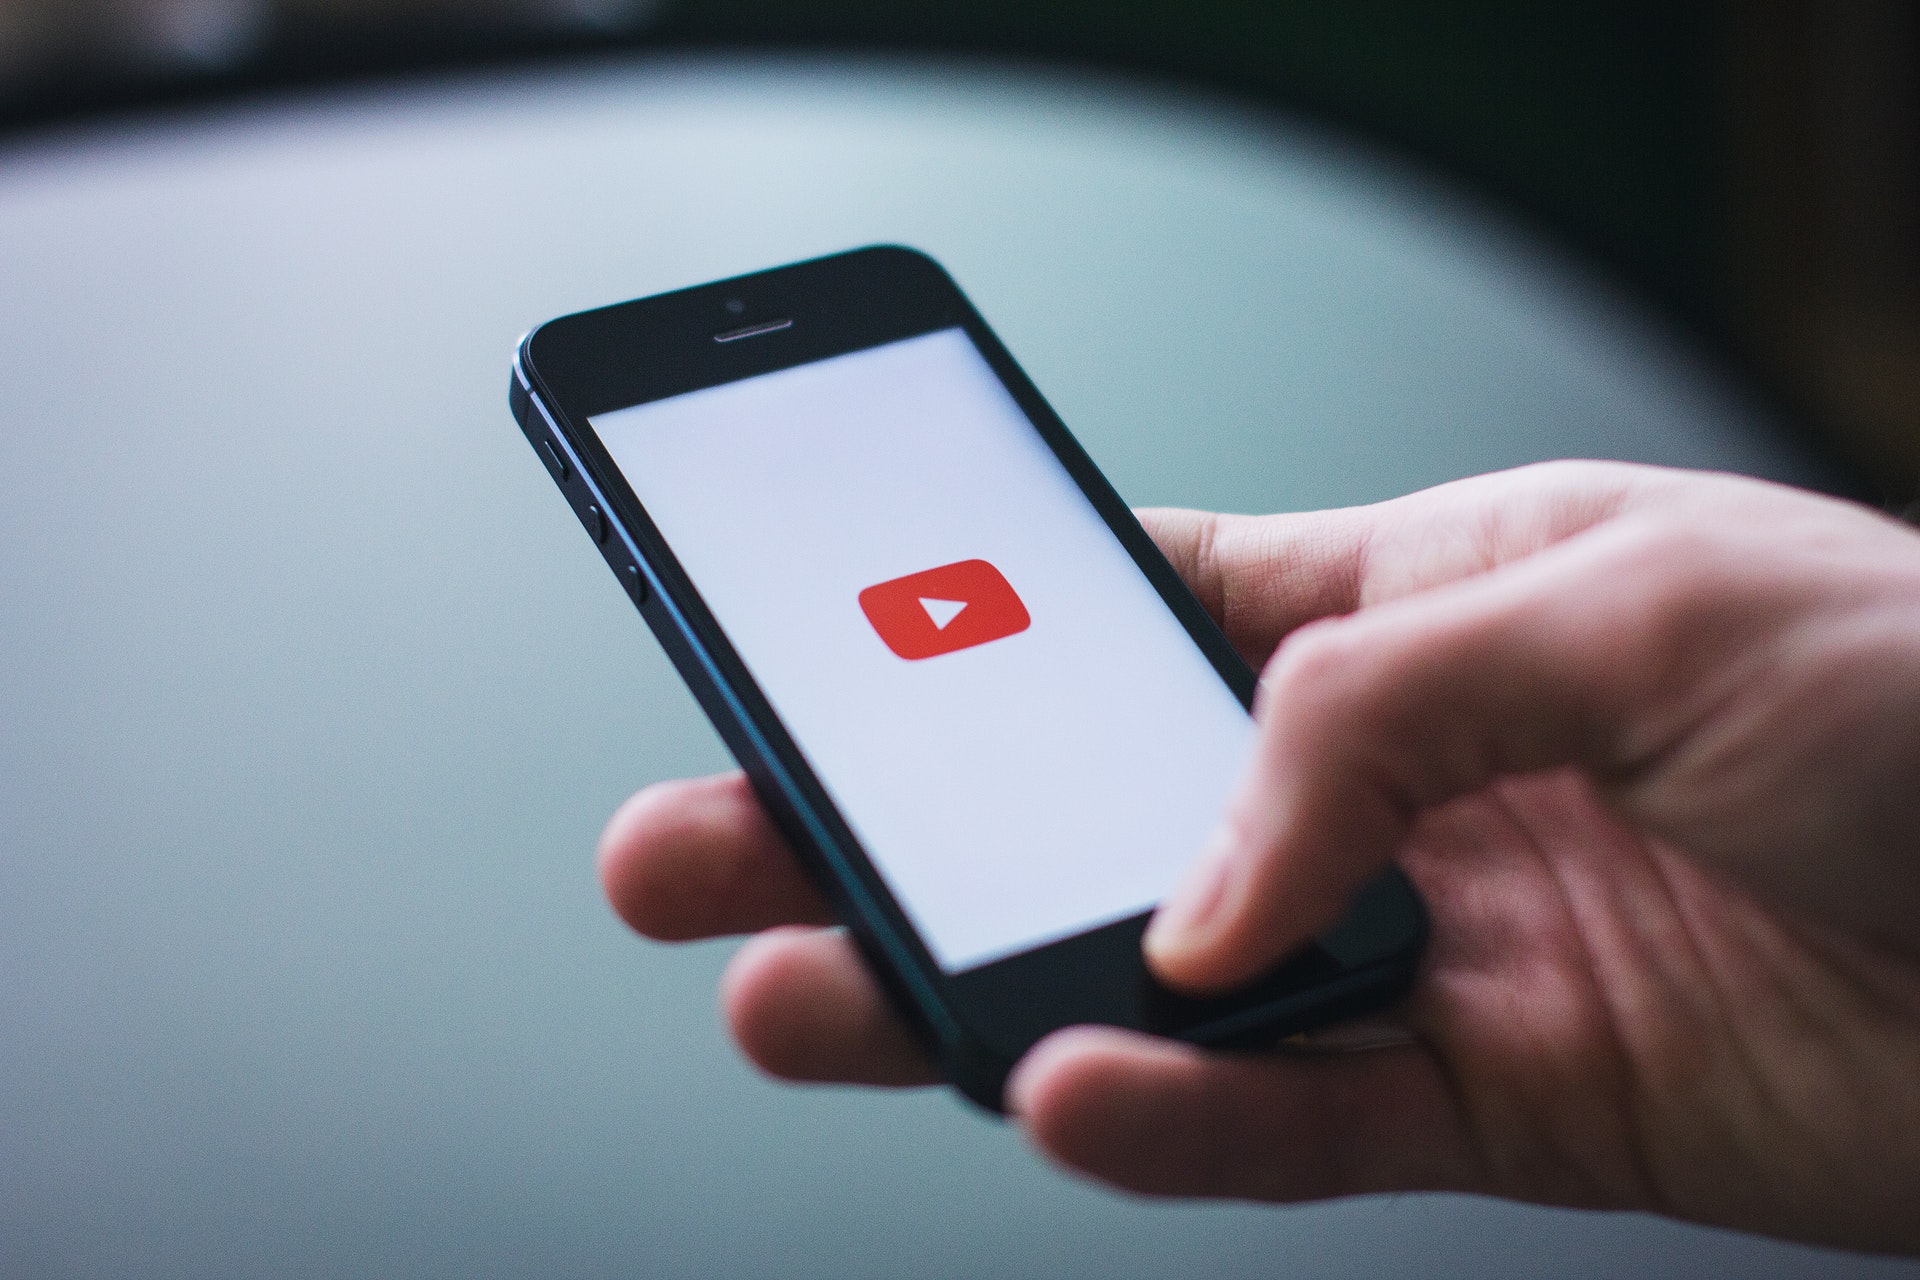 MOBILE ADVERTISING - YouTube dla reklamodawców - zarządzanie bezpieczeństwem i spójnością marki content YouTube dla reklamodawcow zarzadzanie bezpieczenstwem i spojnoscia marki